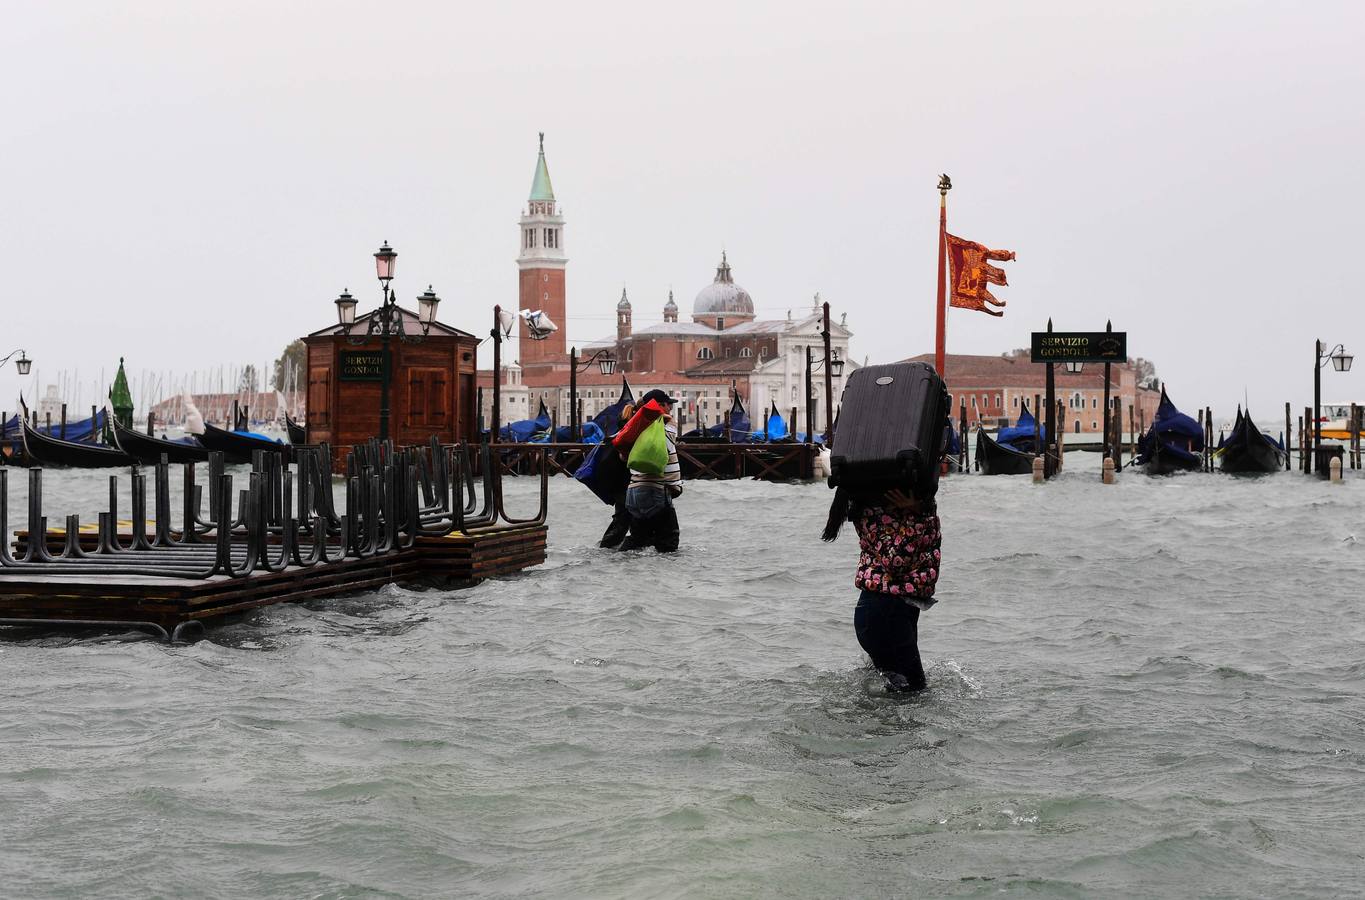 Los turistas se llevarán una anécdota y los residentes unos días de pesadilla. El agua inunda las calles de Venecia tras el paso de un fuerte temporal con intensas lluvias que han provocado el cierre de escuelas, varias carreteras y algunas conexiones ferroviarias.